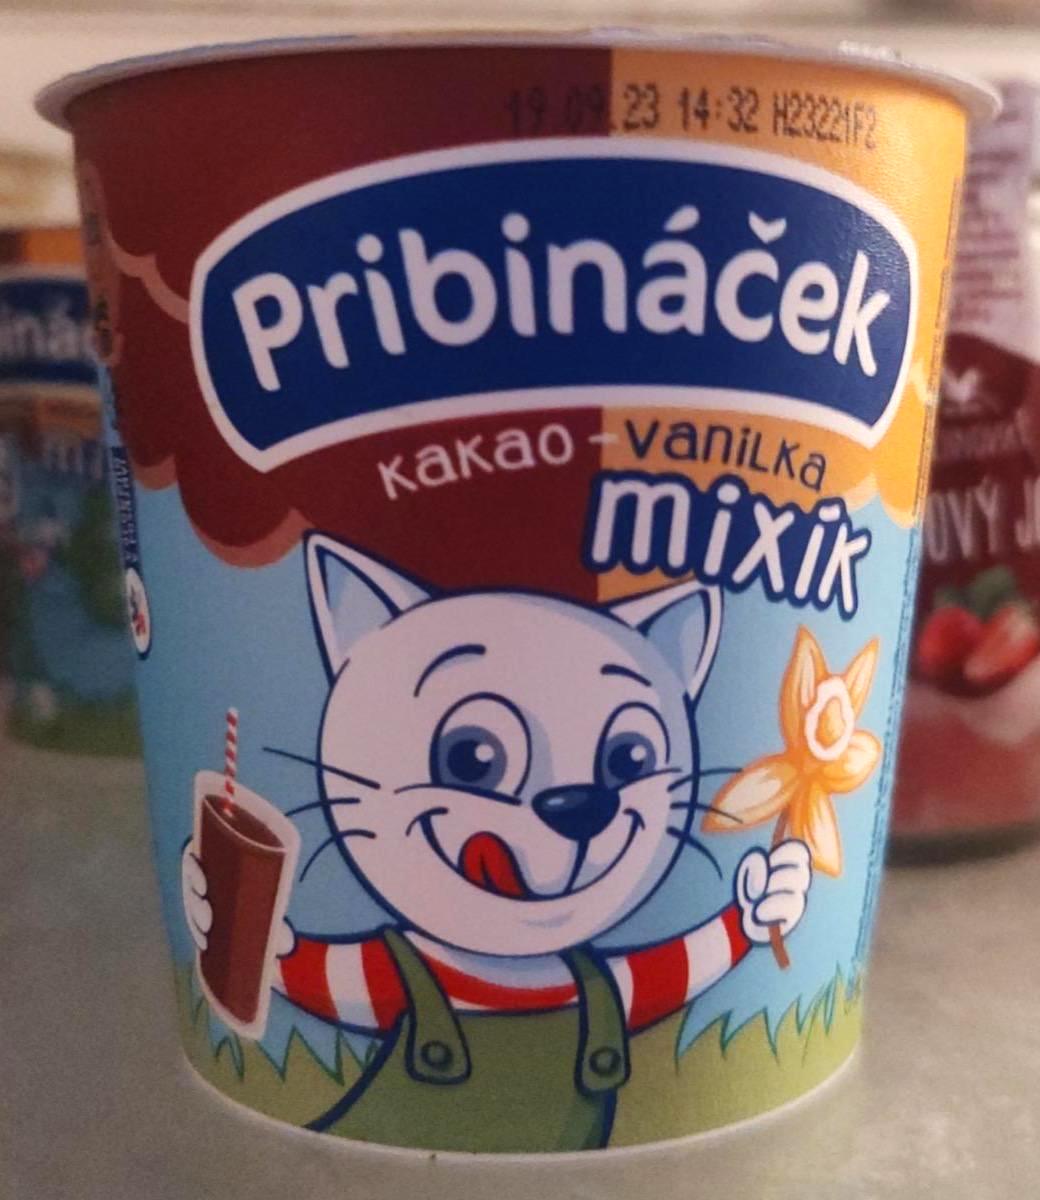 Képek - Pribináček kakao - vanilka mixík